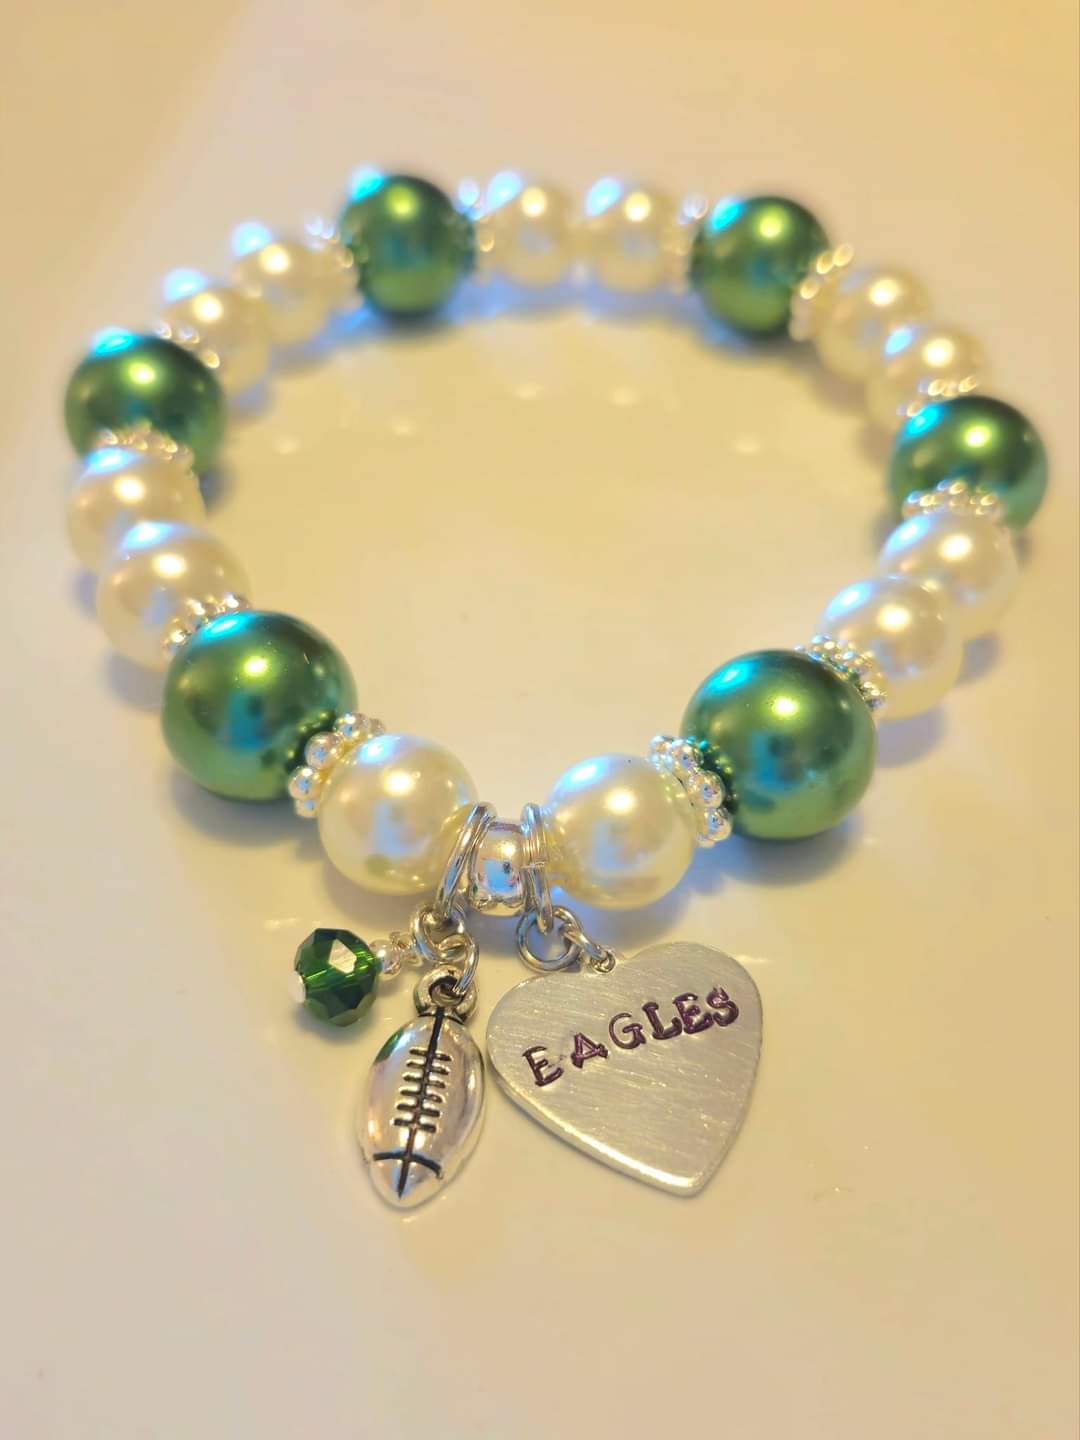 EAGLES!! Green & White charm bracelet